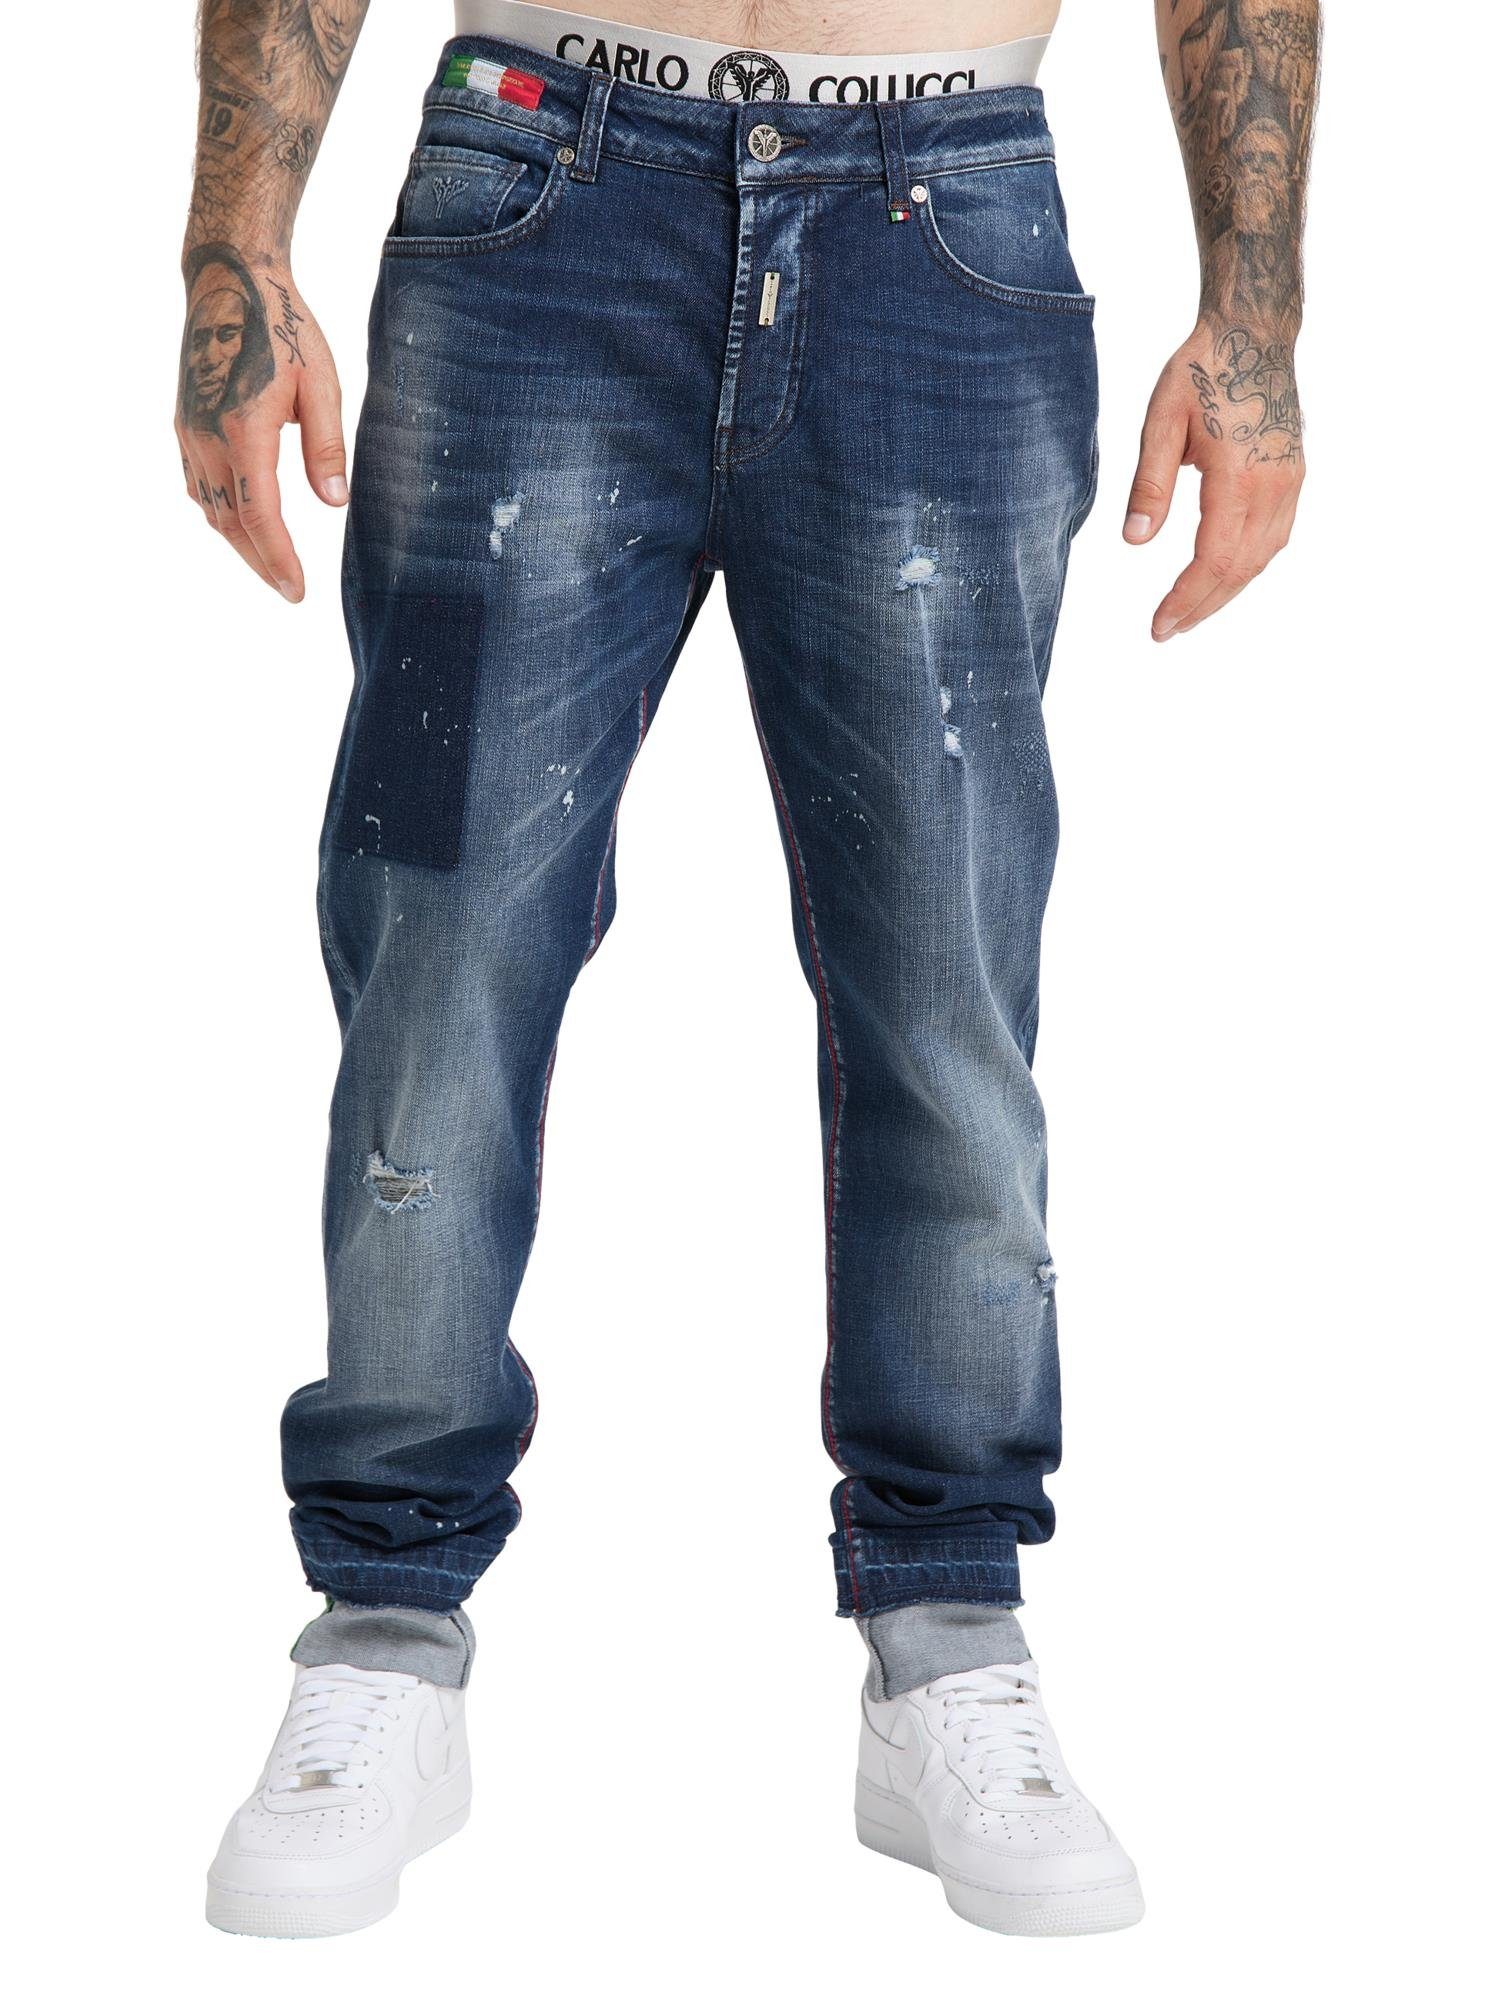 CARLO COLUCCI 5-Pocket-Jeans 36W Cavicchioli